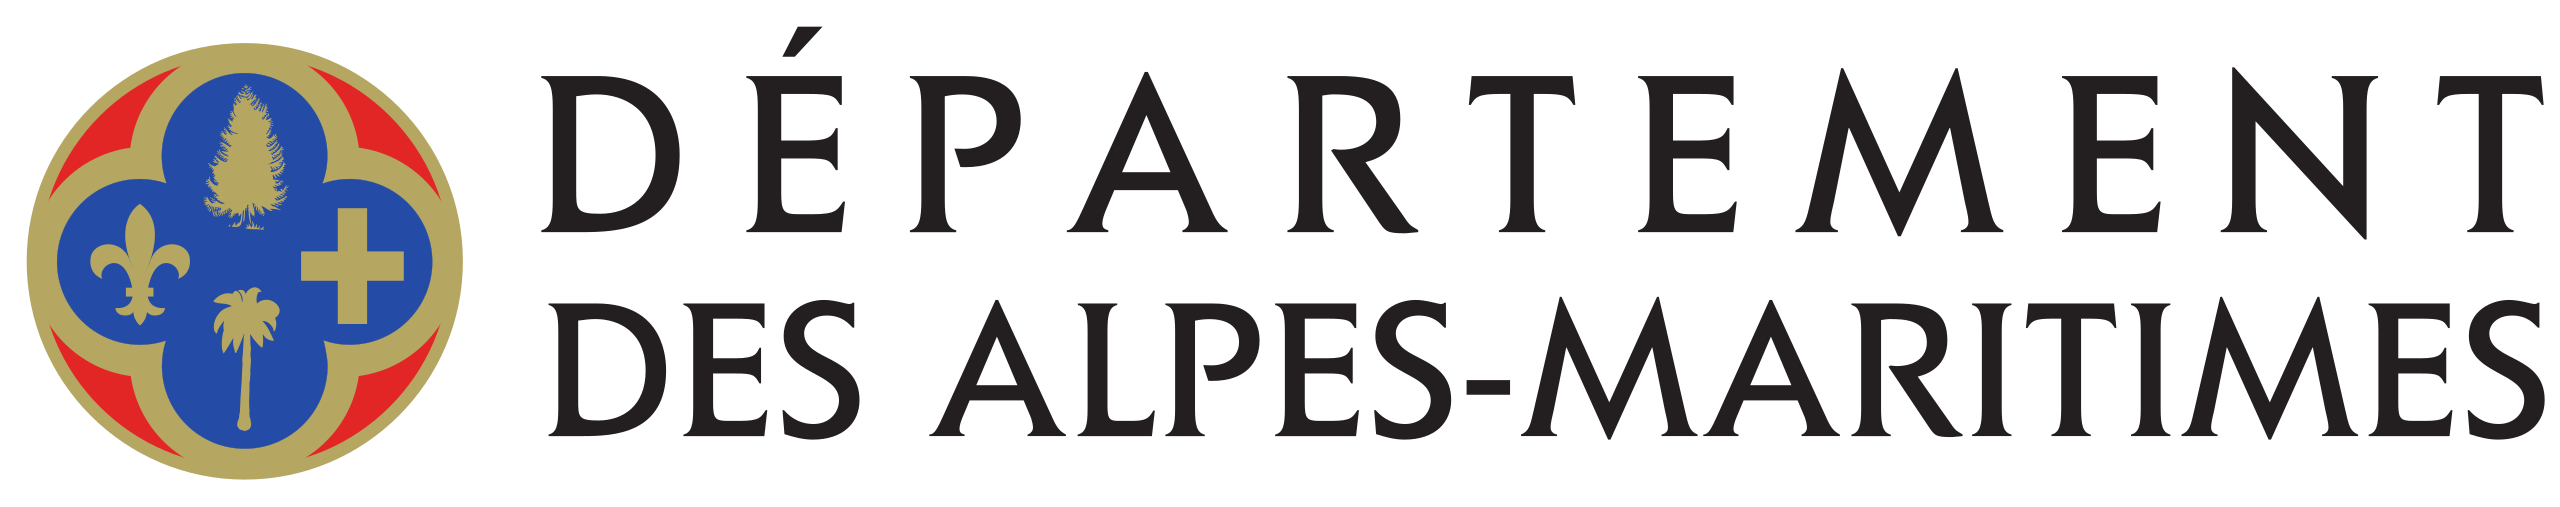 Département Alpes-Maritimes